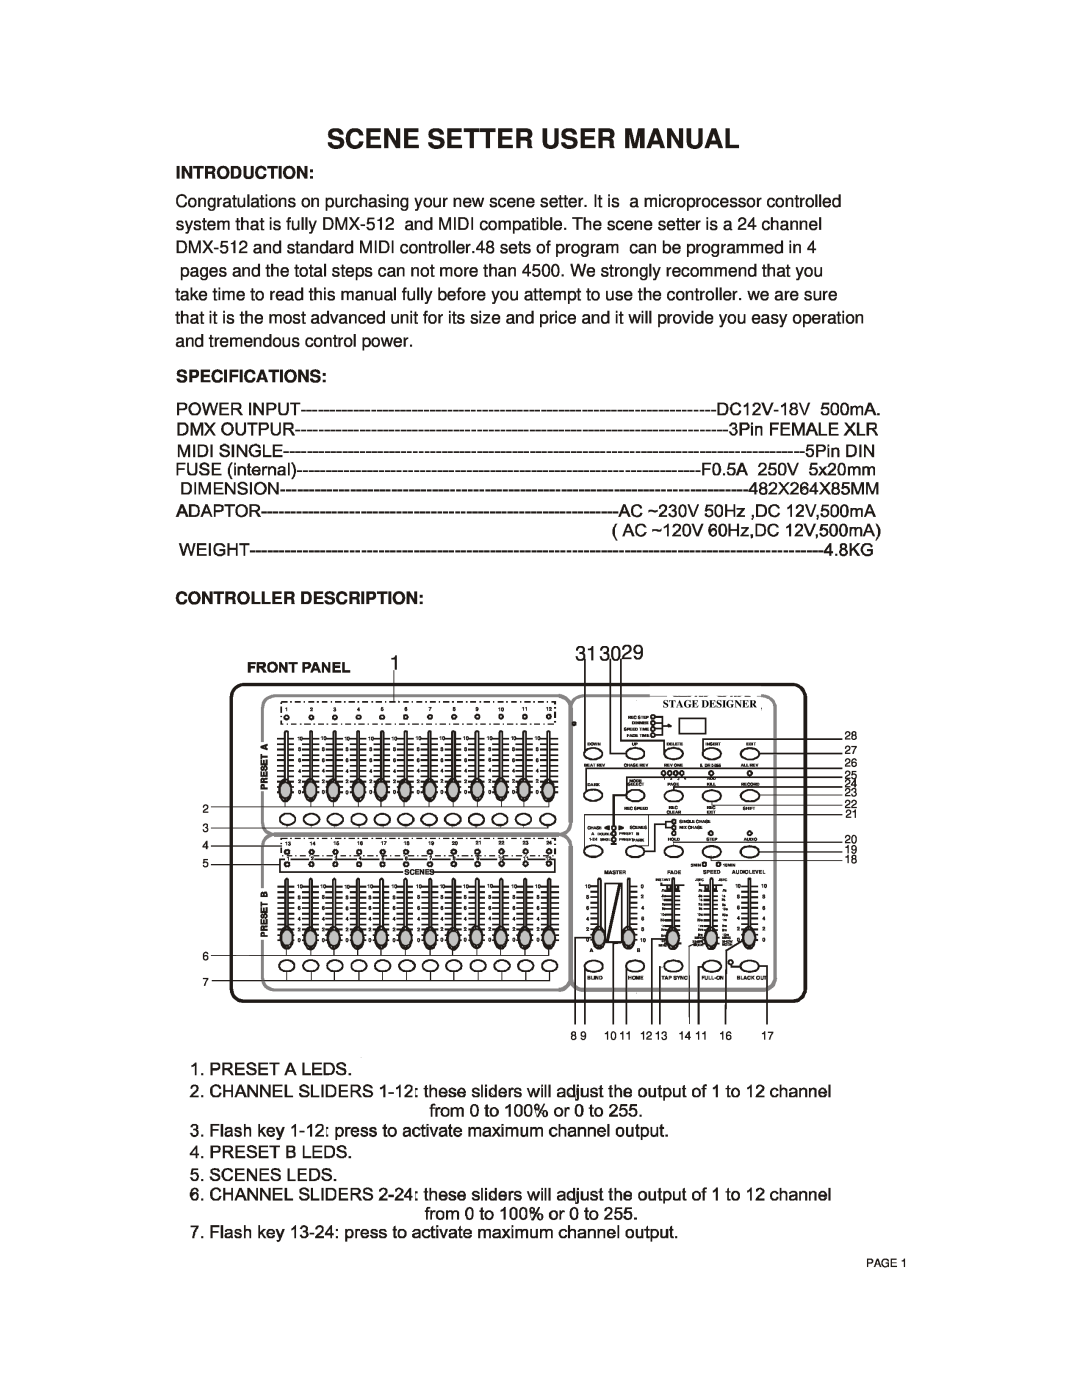 Chauvet TFX-24C manual Introduction, Specifications Controller Description 